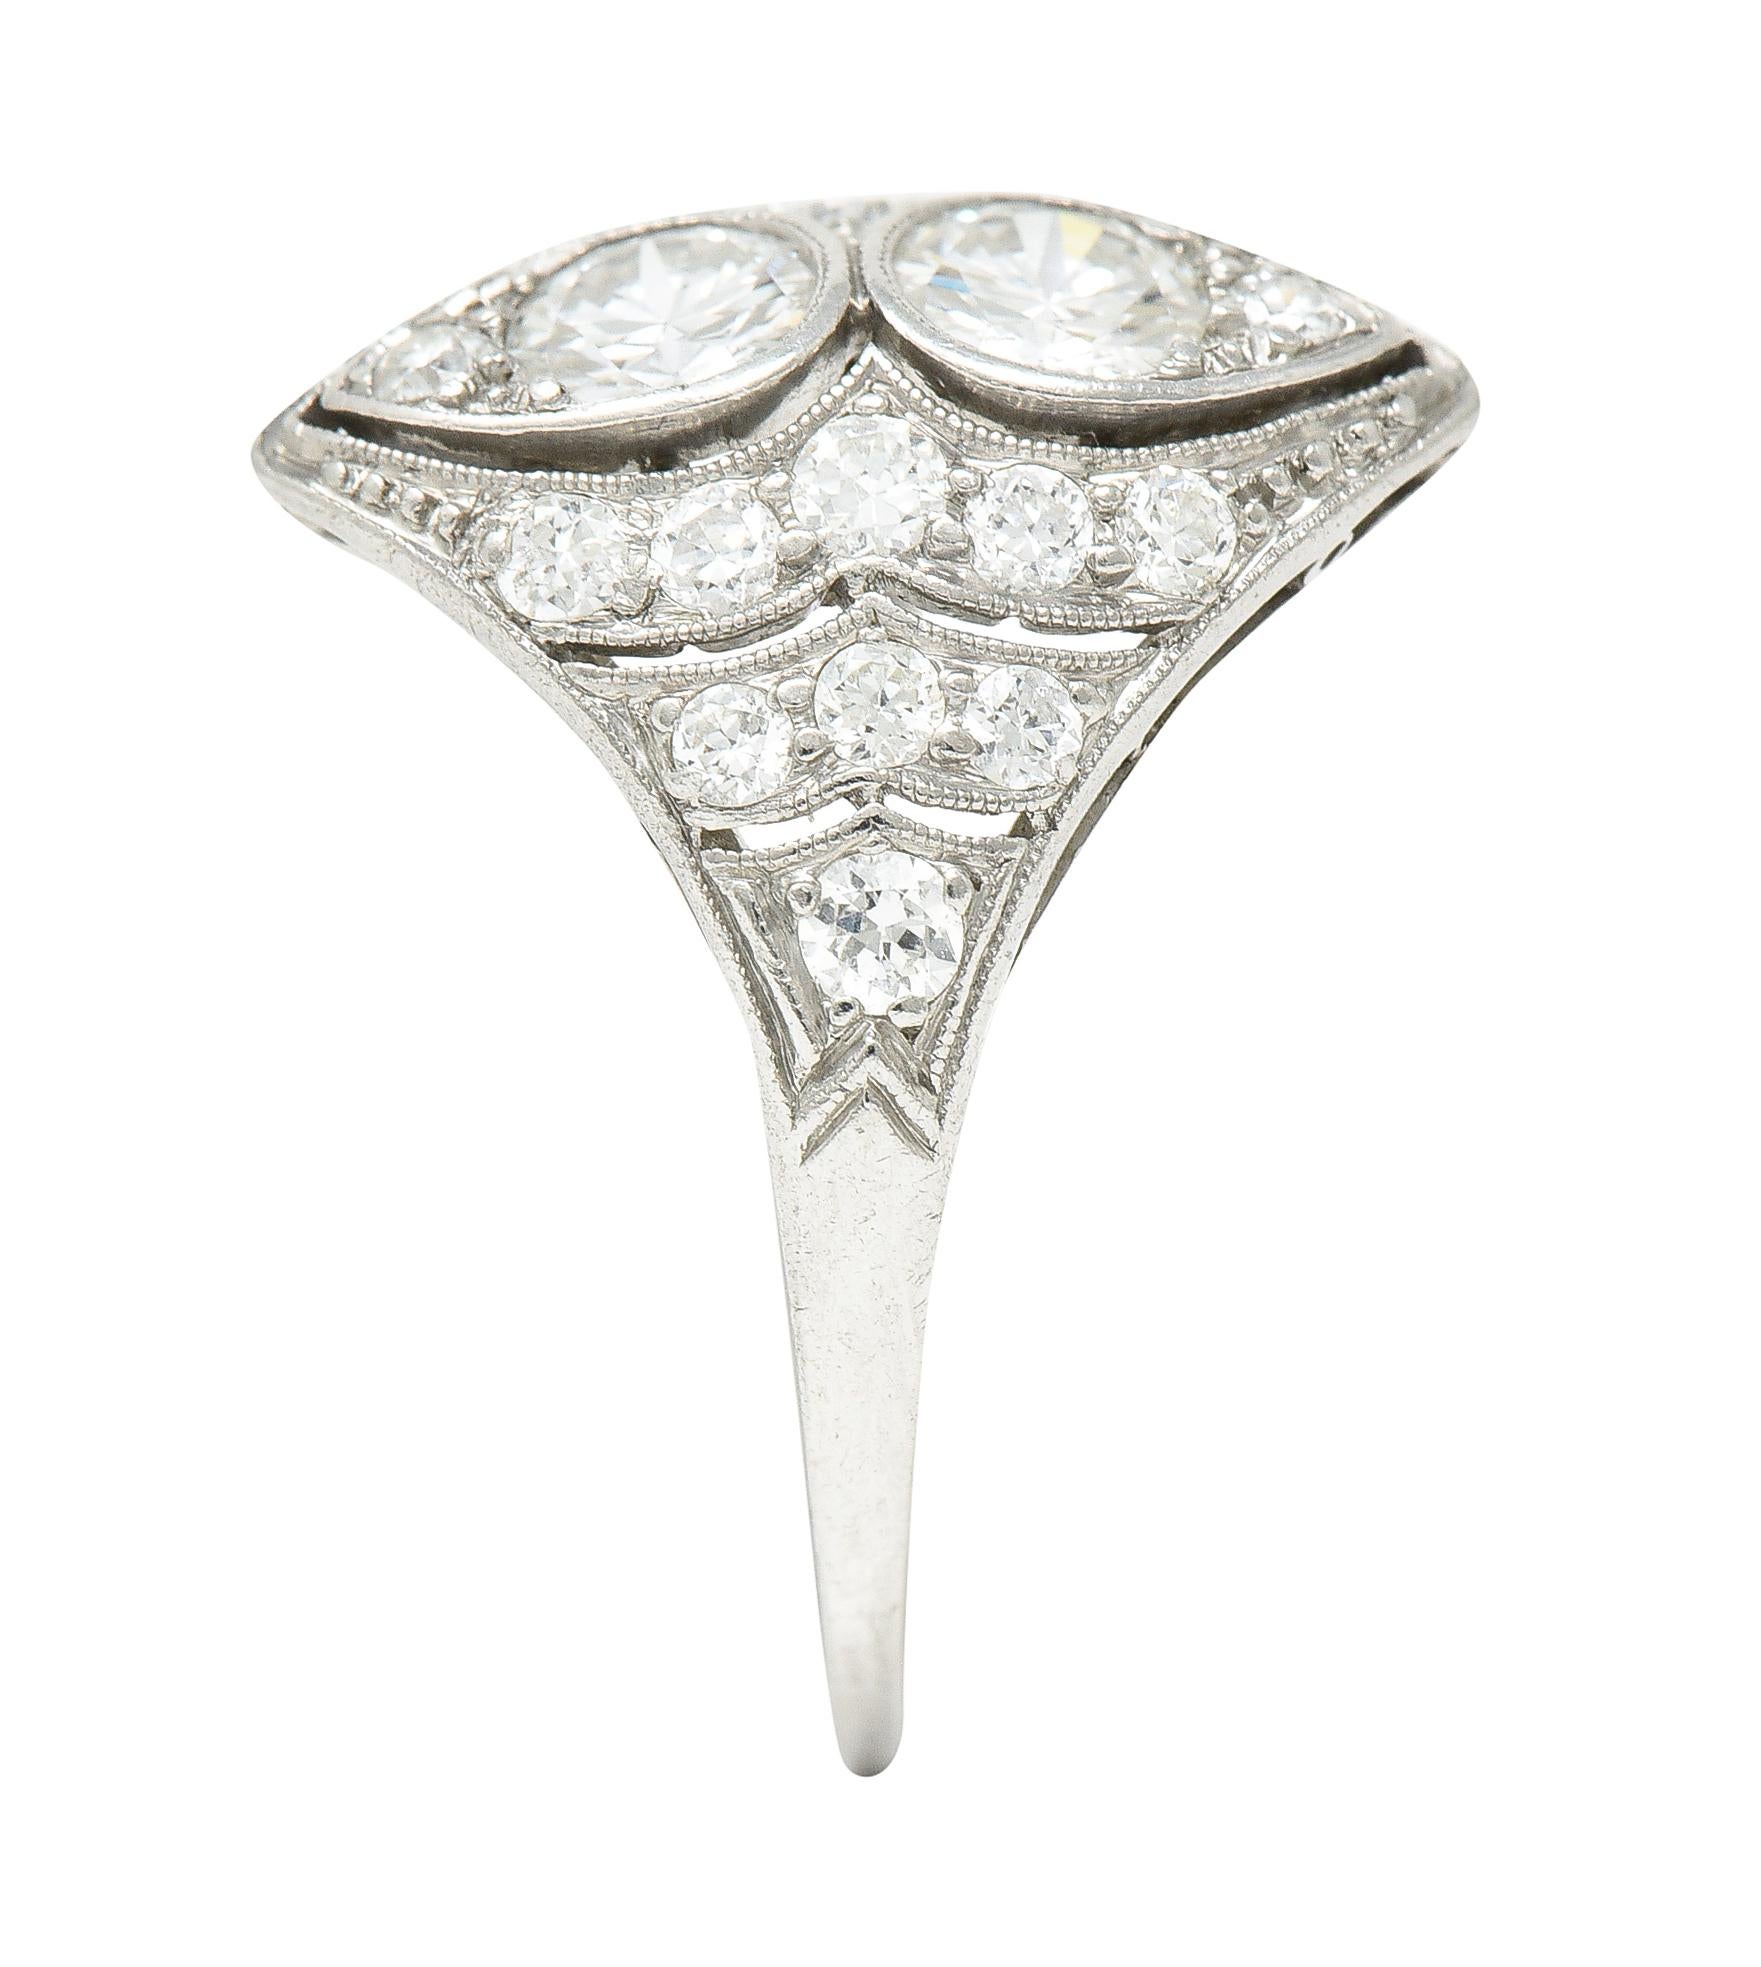 WM Wise Art Deco 1.18 Carat Old European Cut Diamond Platinum Dinner Ring 4